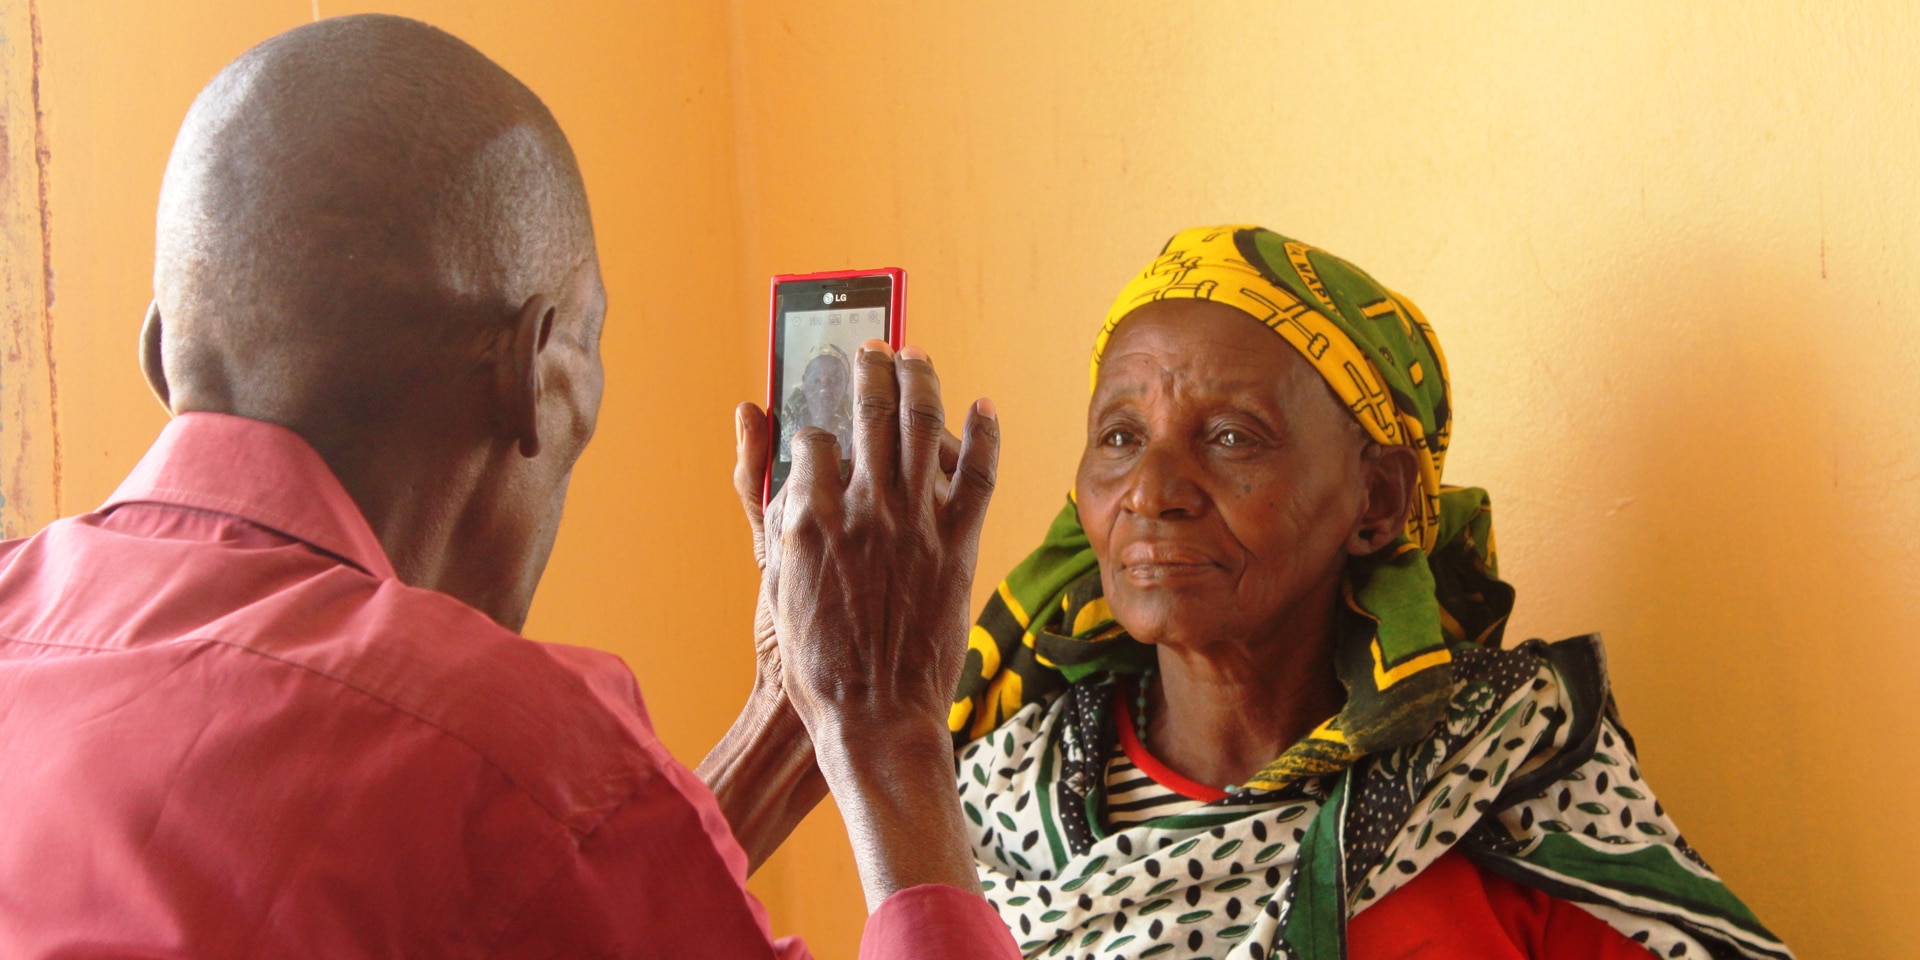 Un uomo scatta una foto ritratto con il suo cellulare a una donna. La donna è in piedi davanti a una parete arancione. 